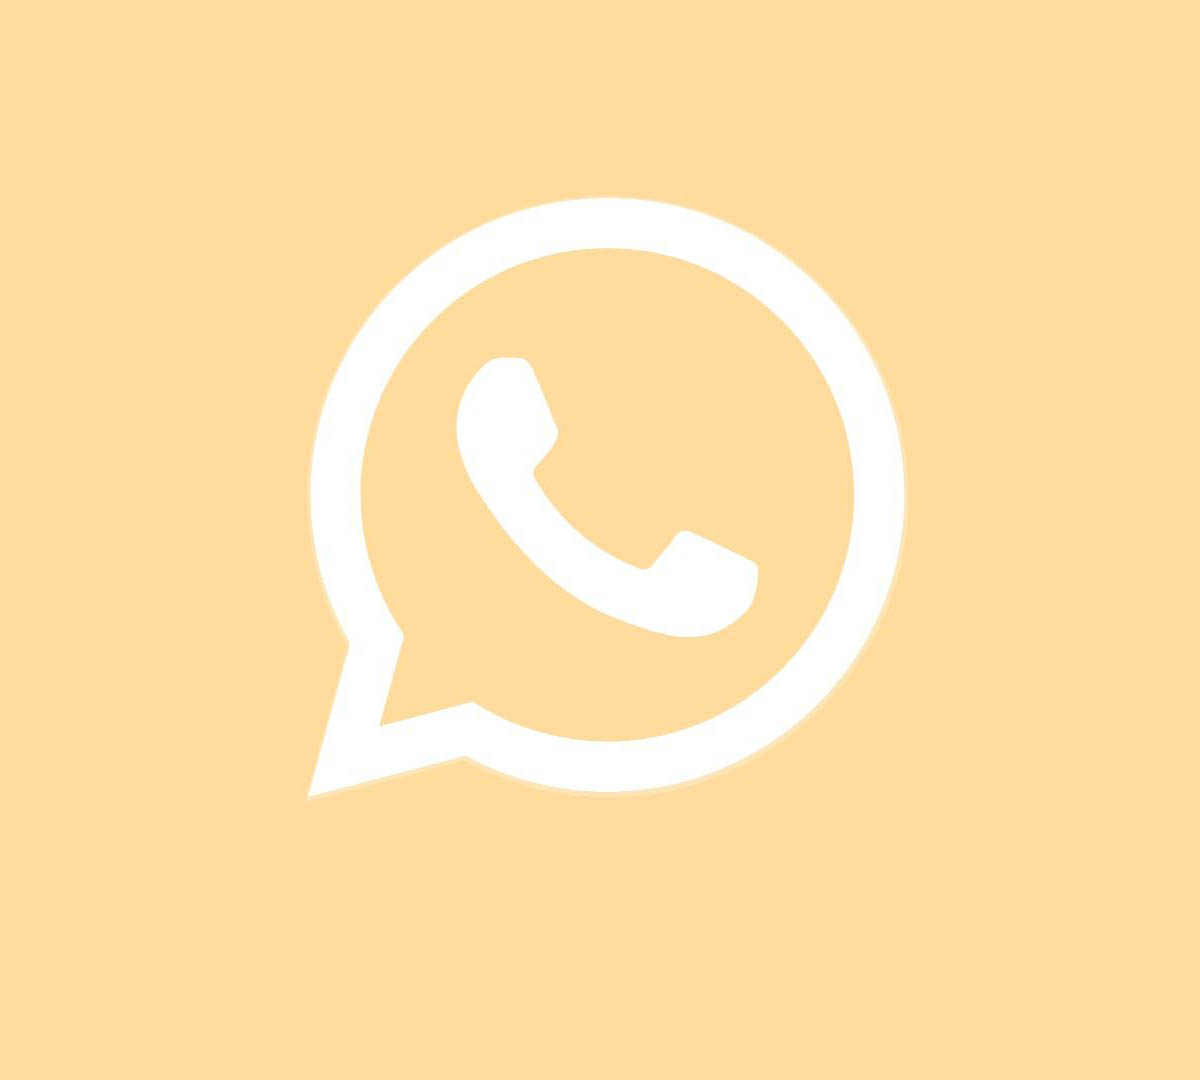 cambiar el icono de whatsapp